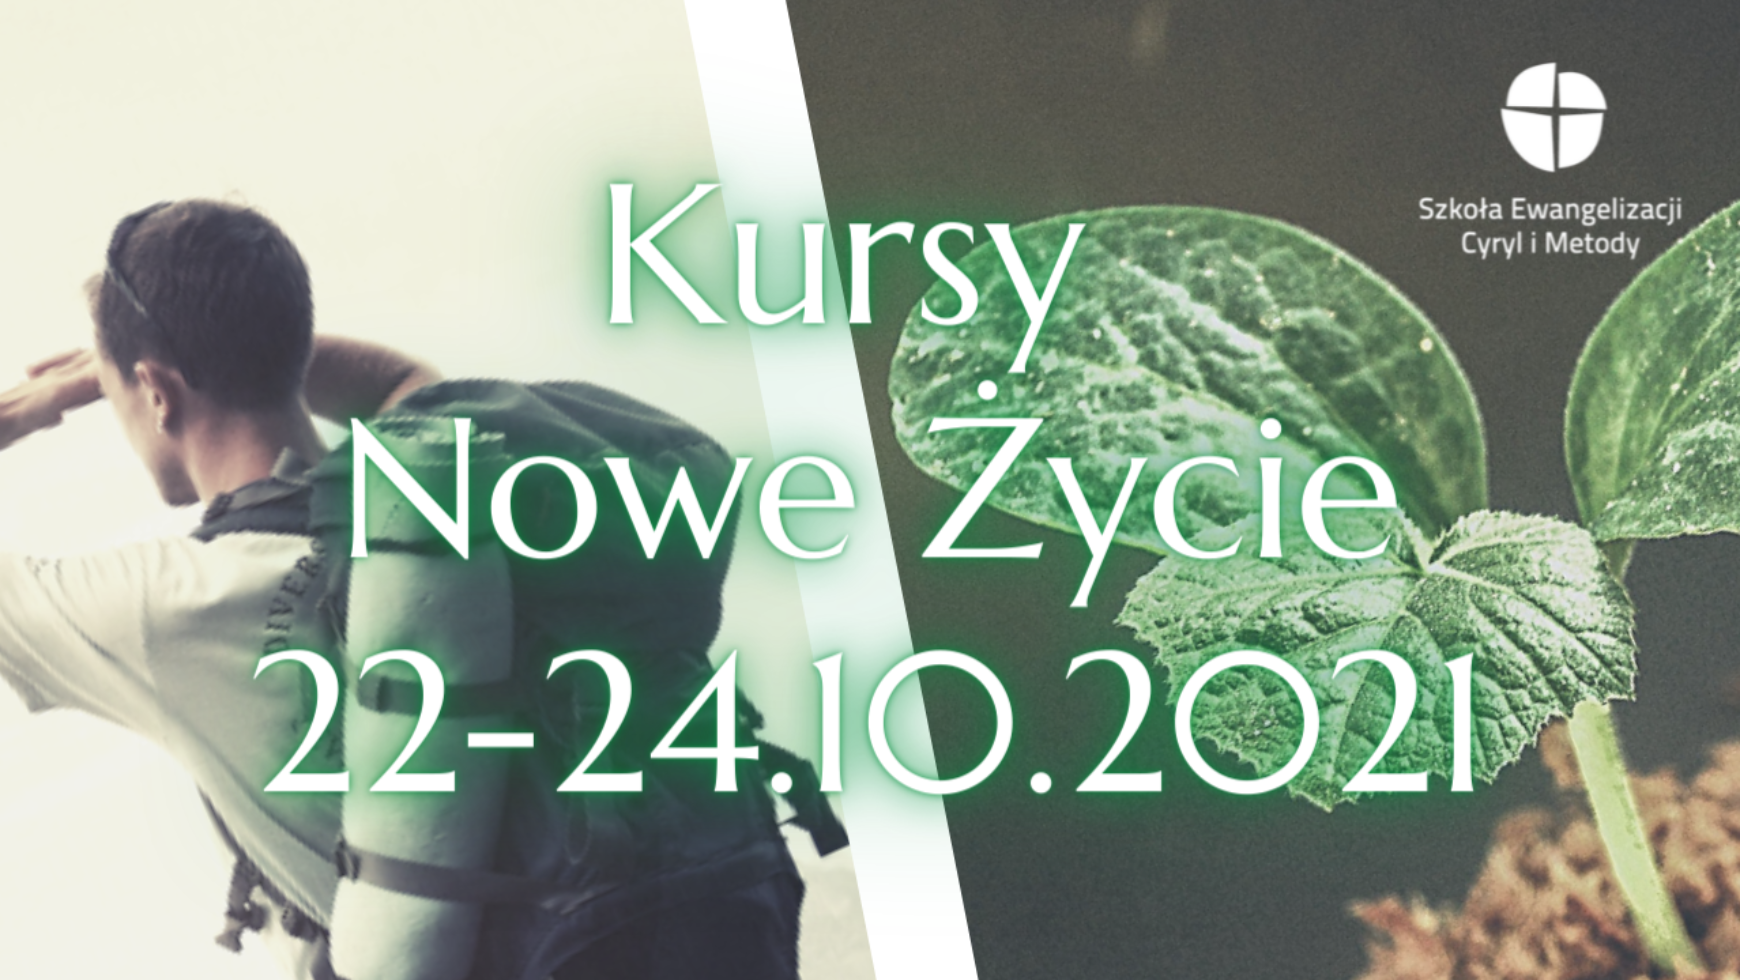 Kurs Nowe Życie, Bielsko-Biała i Katowice, 22-24.10.2021